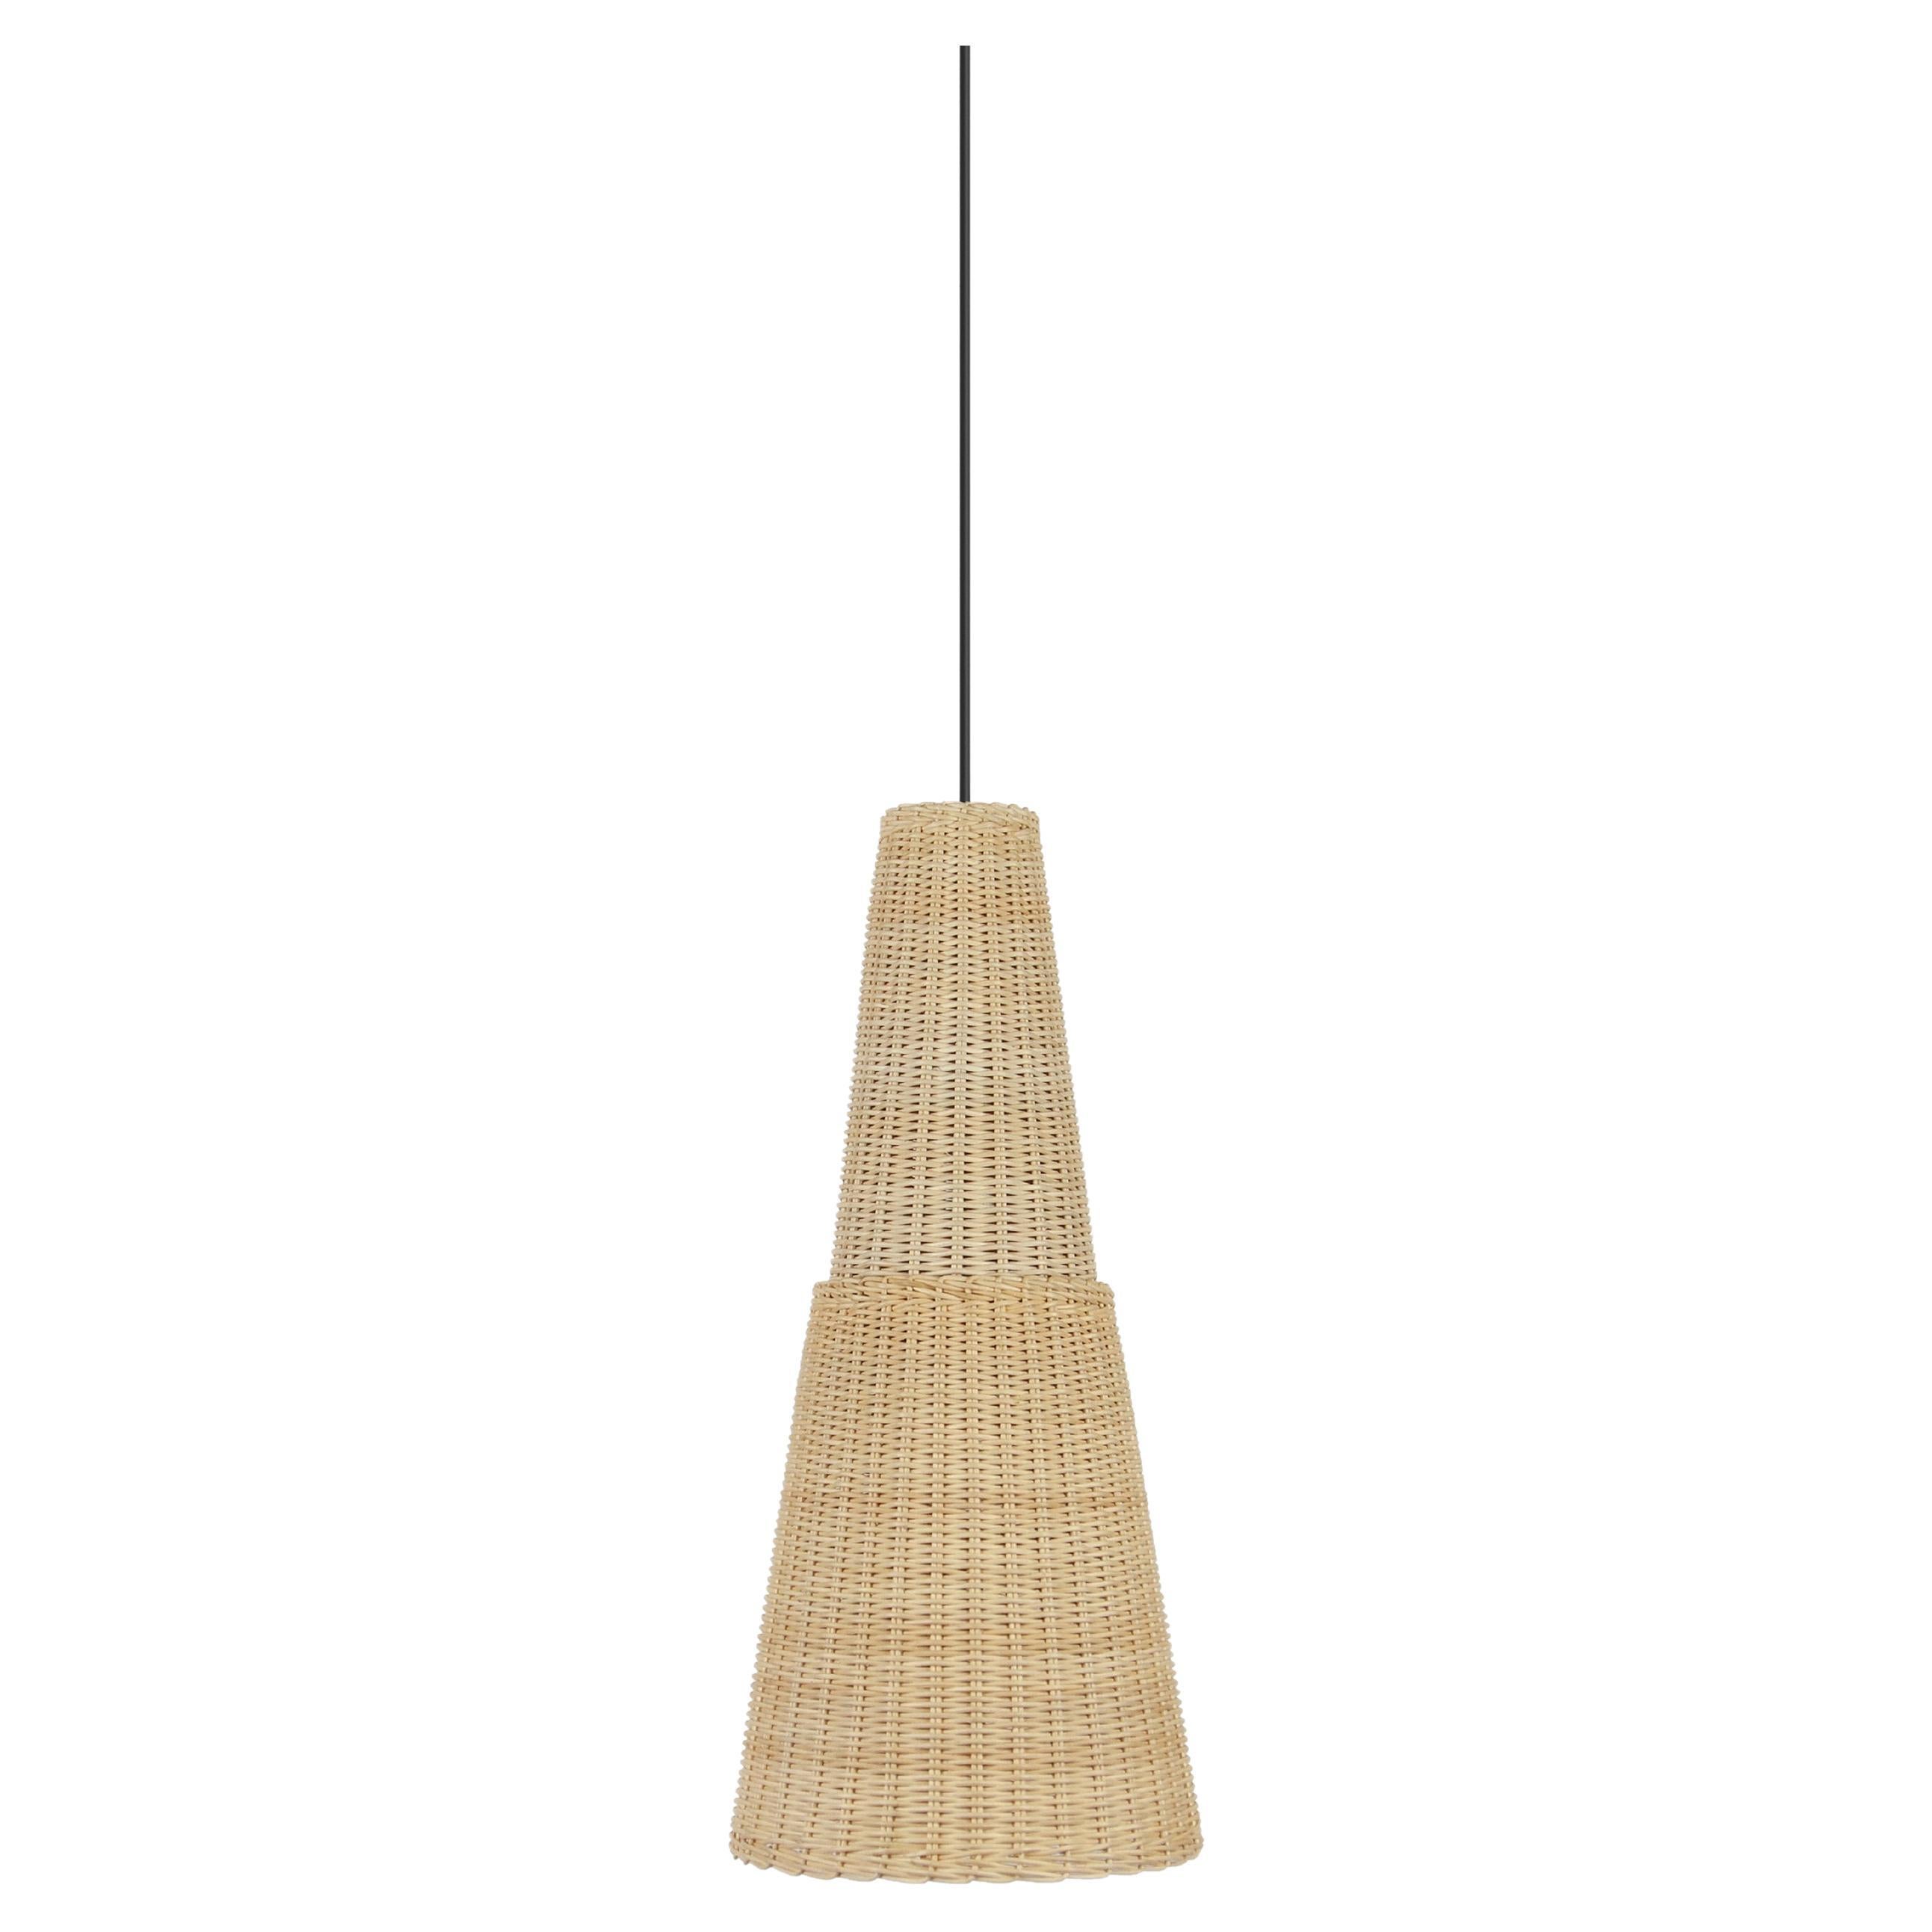 Bottega Intreccio Seia 66 Pendant Miele in Bamboo Wicker, by Maurizio Bernabei